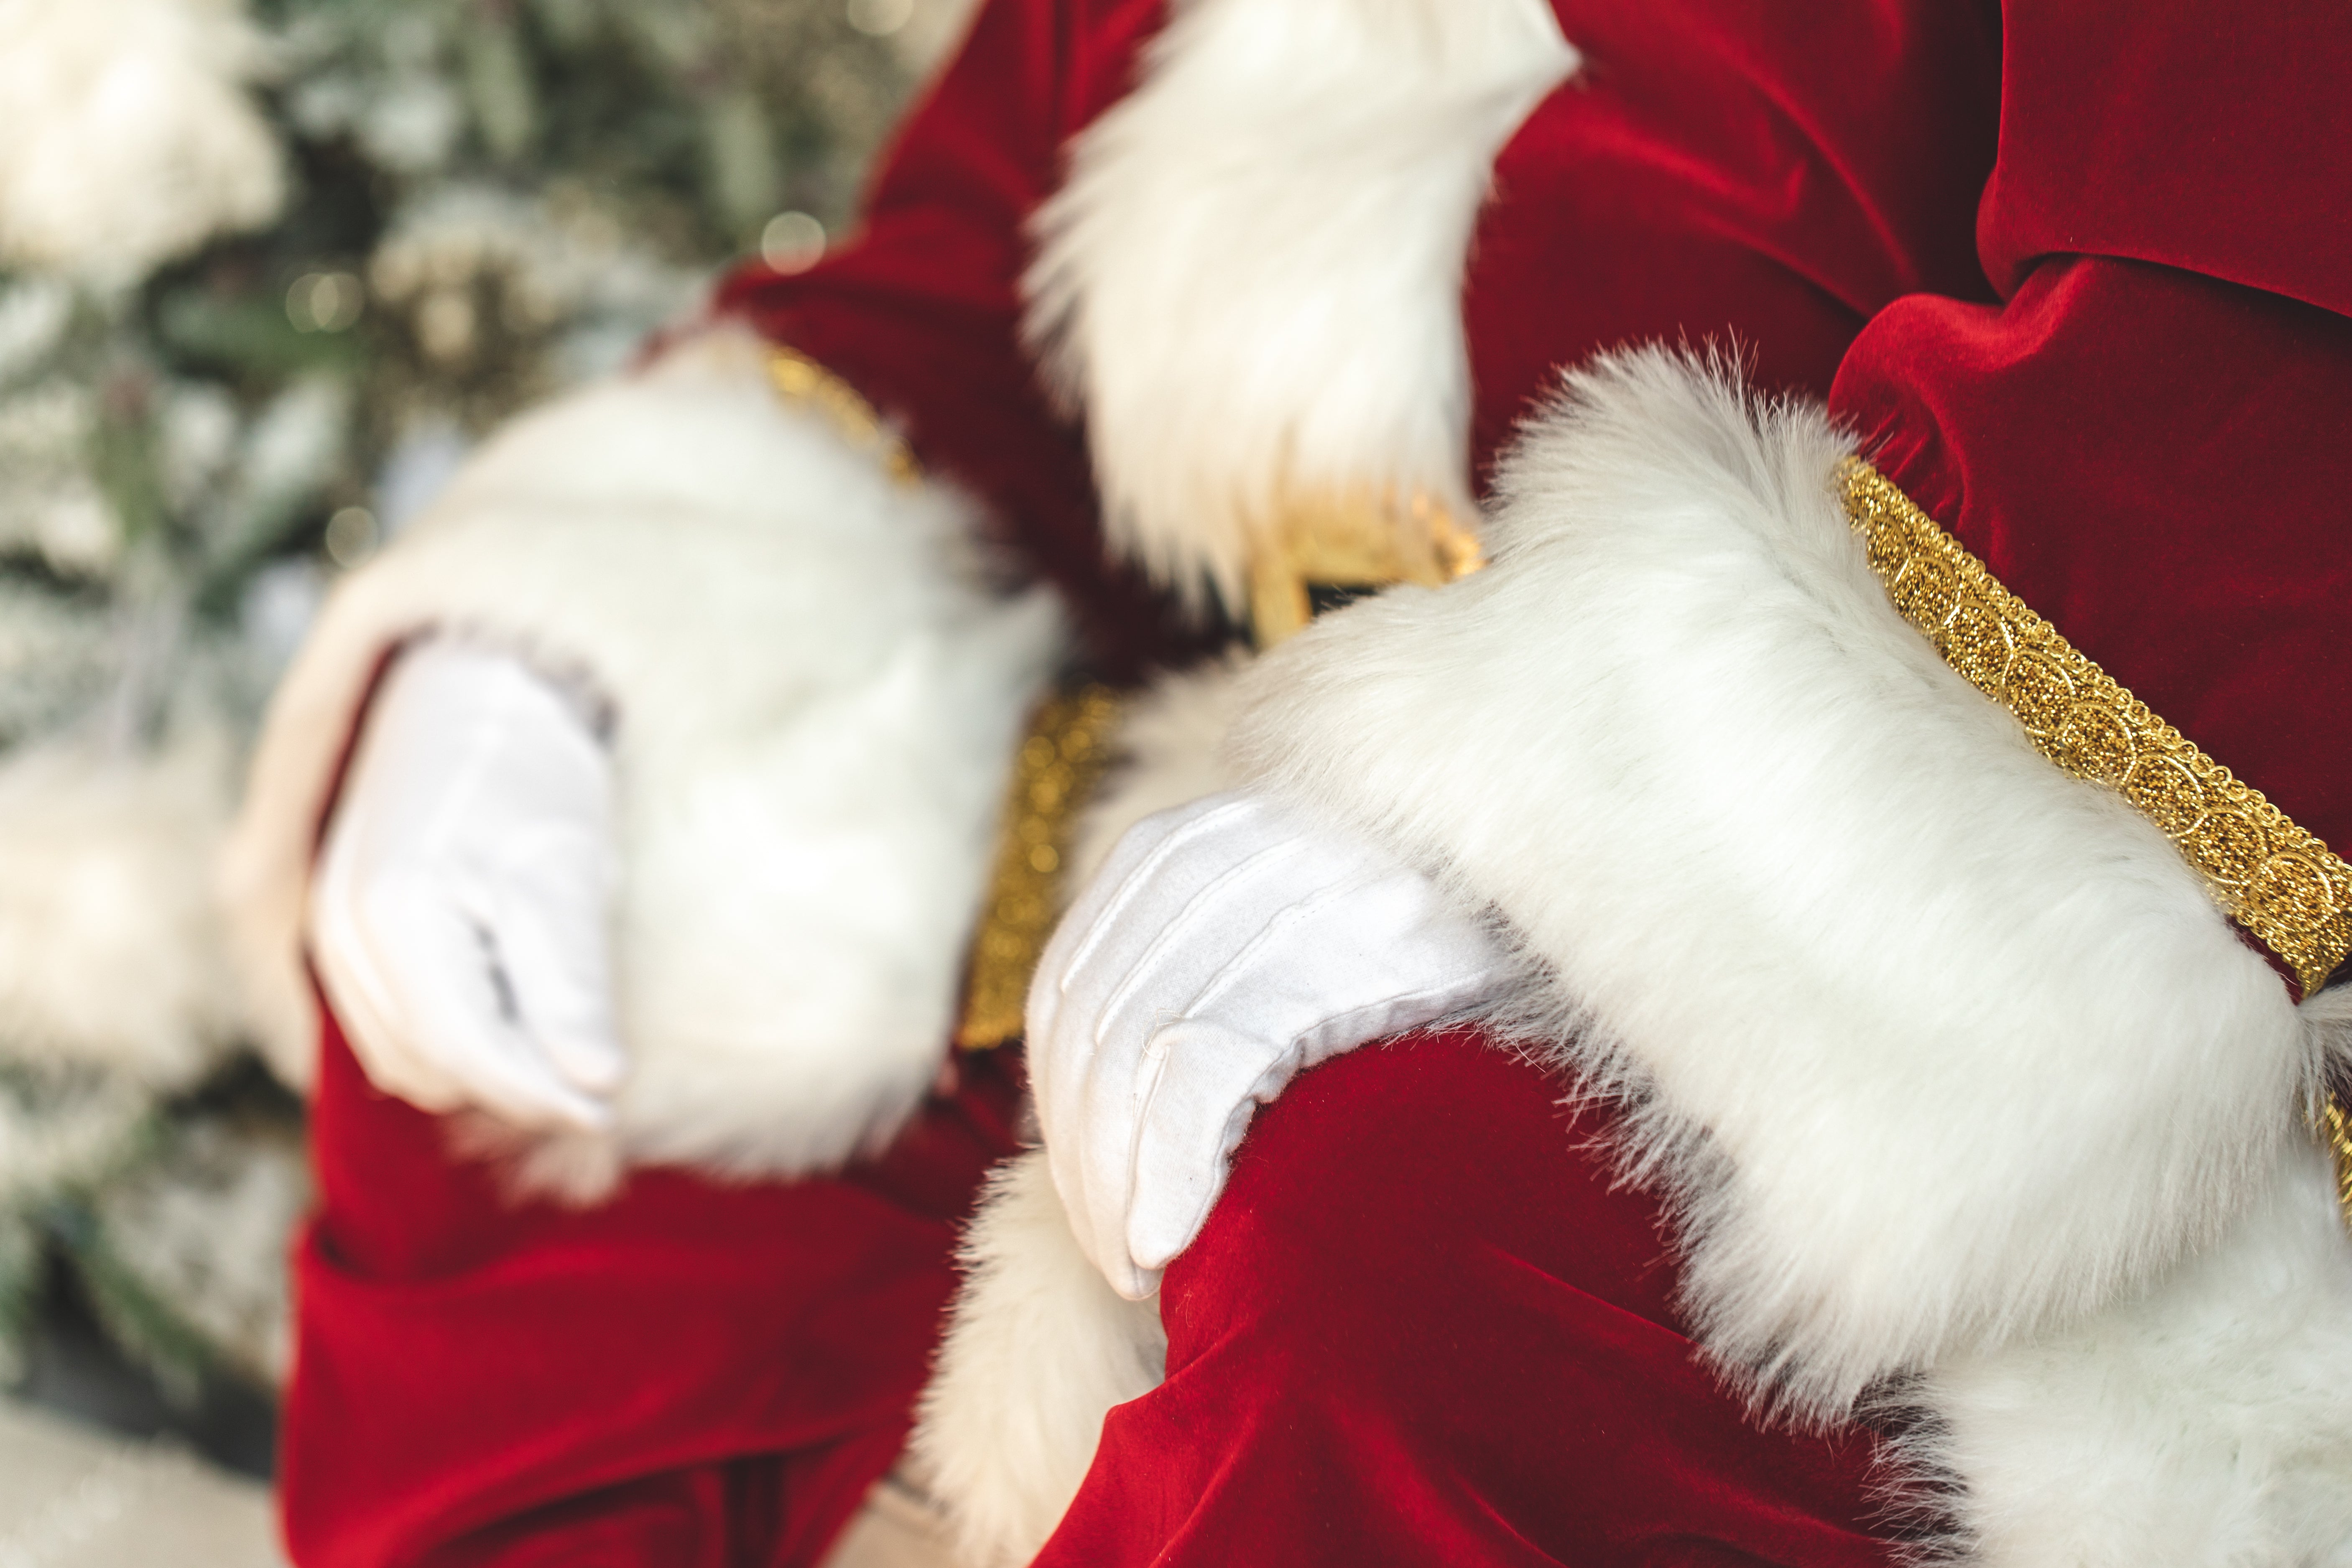 https://burst.shopifycdn.com/photos/santa-s-white-gloves-and-red-velvet-suit.jpg?exif=0&iptc=0